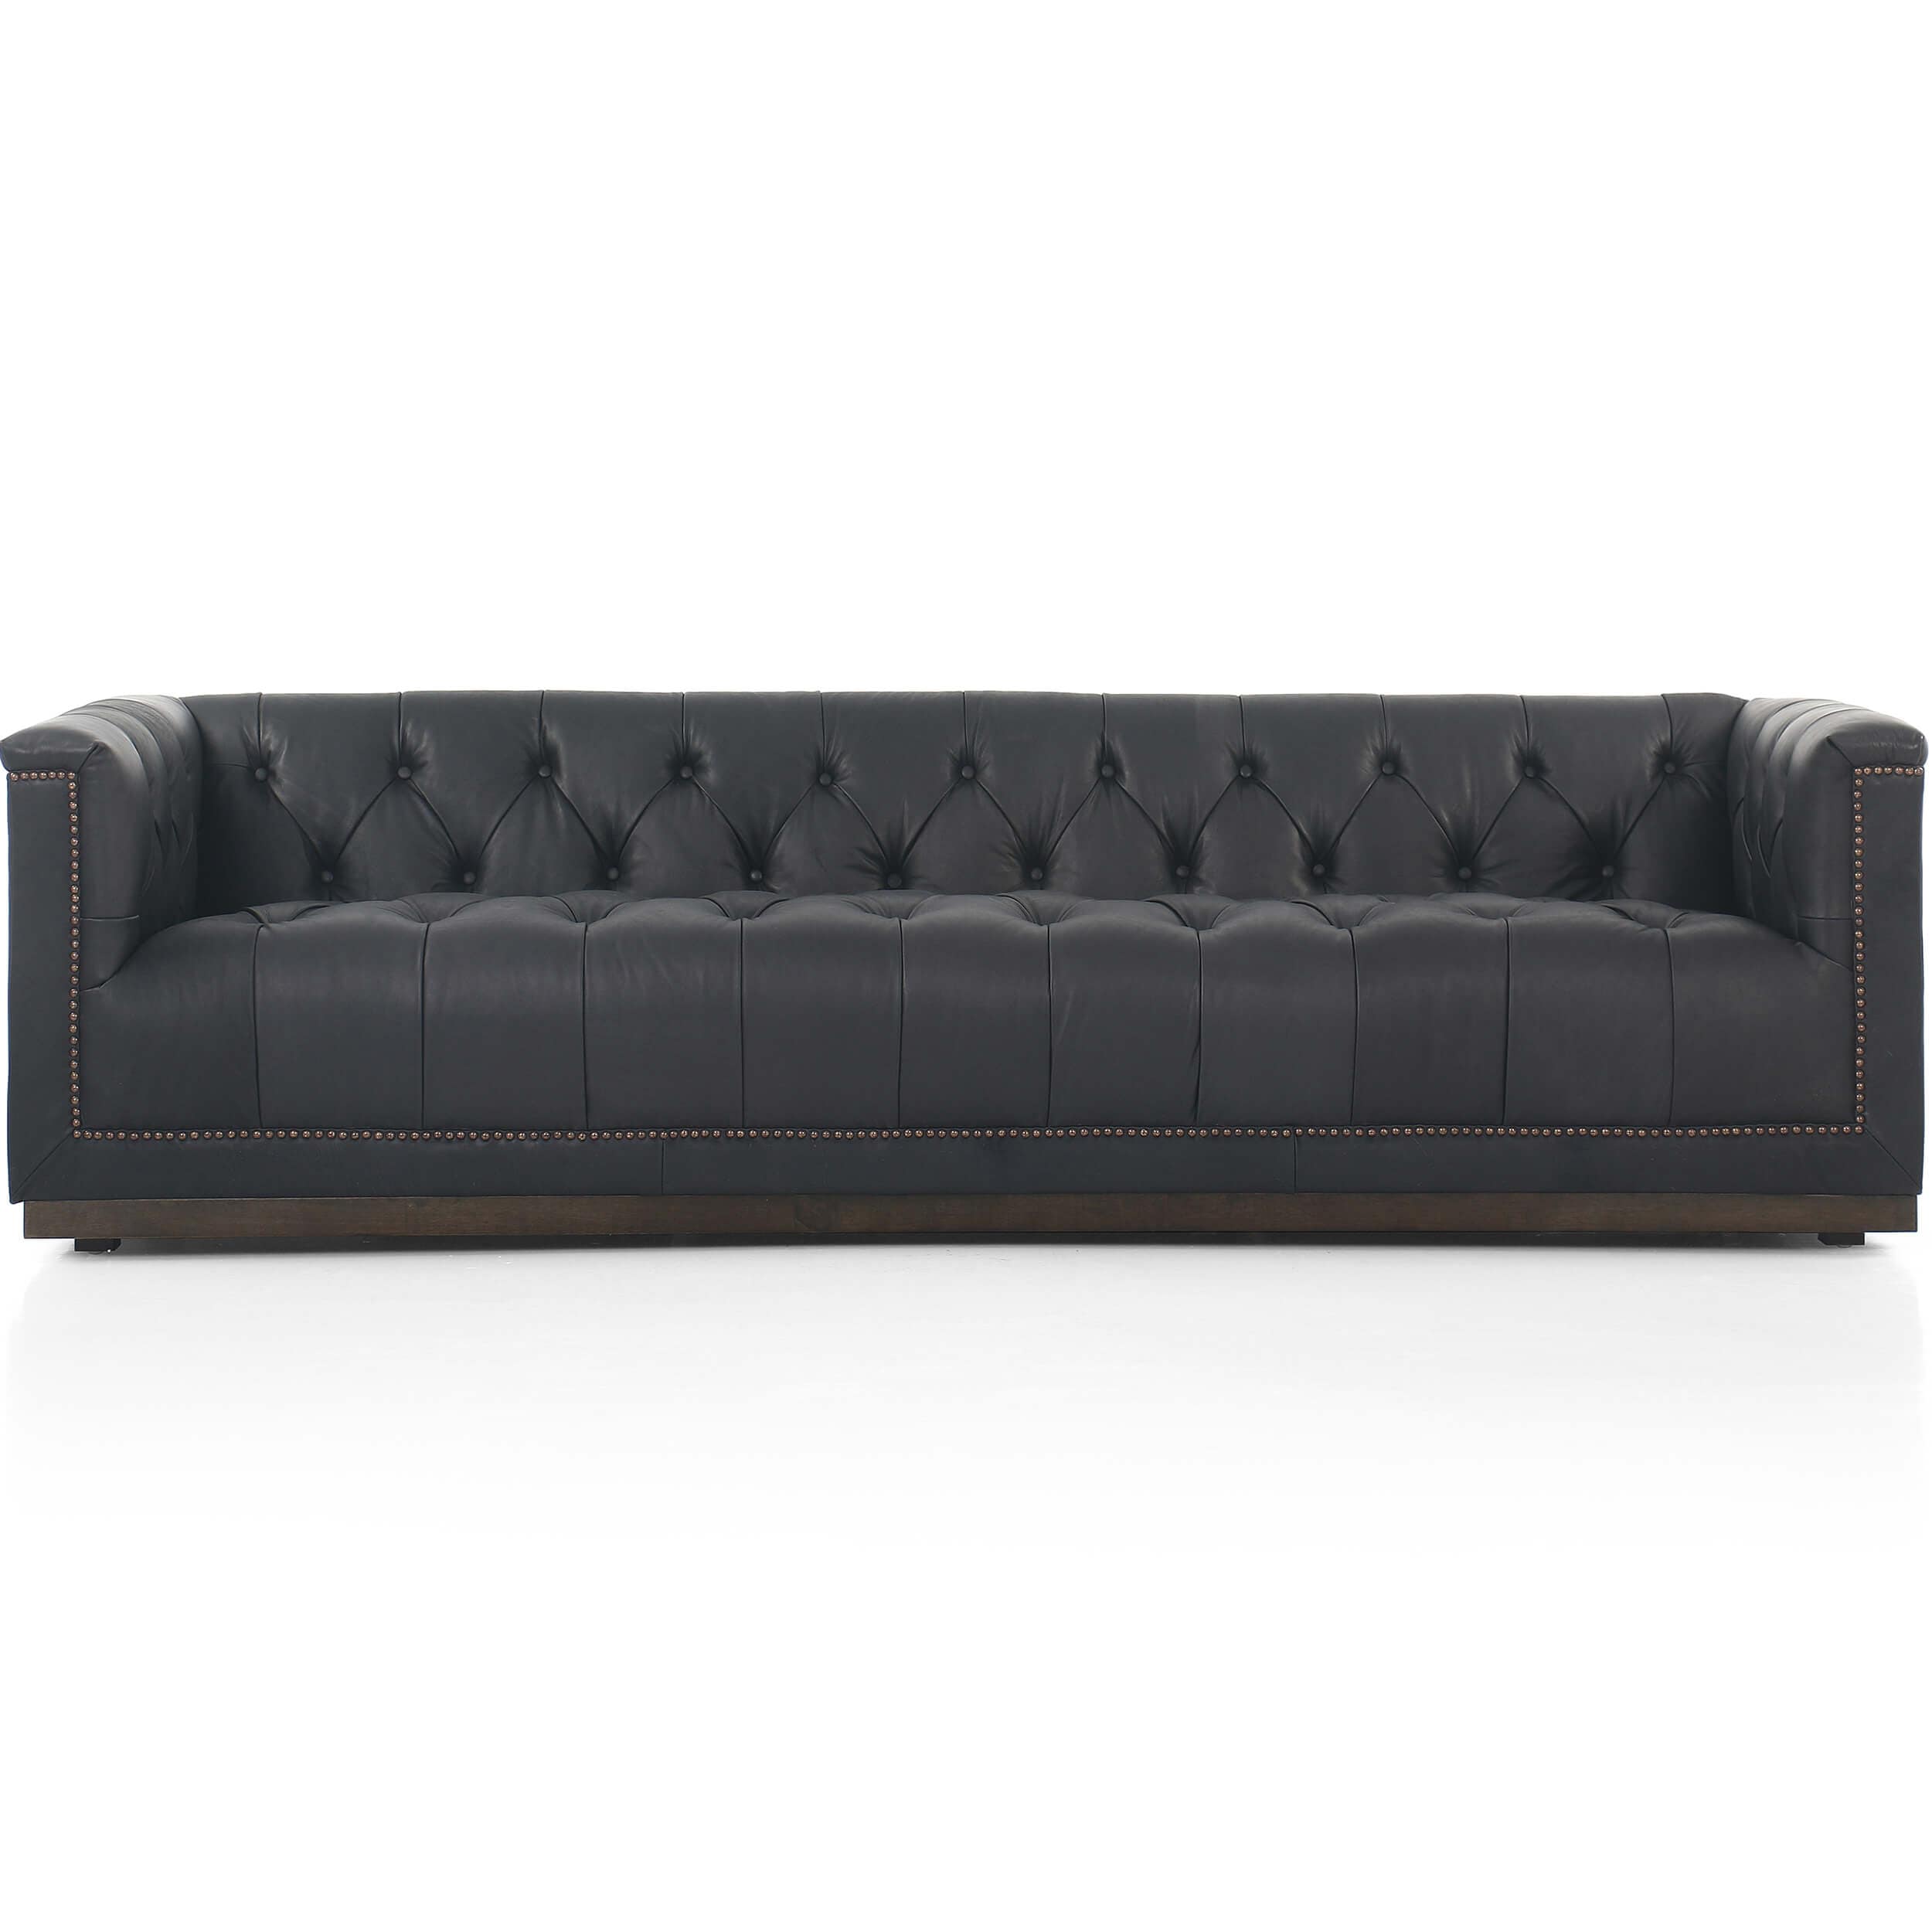 Image of Maxx Leather 95" Sofa, Heirloom Black